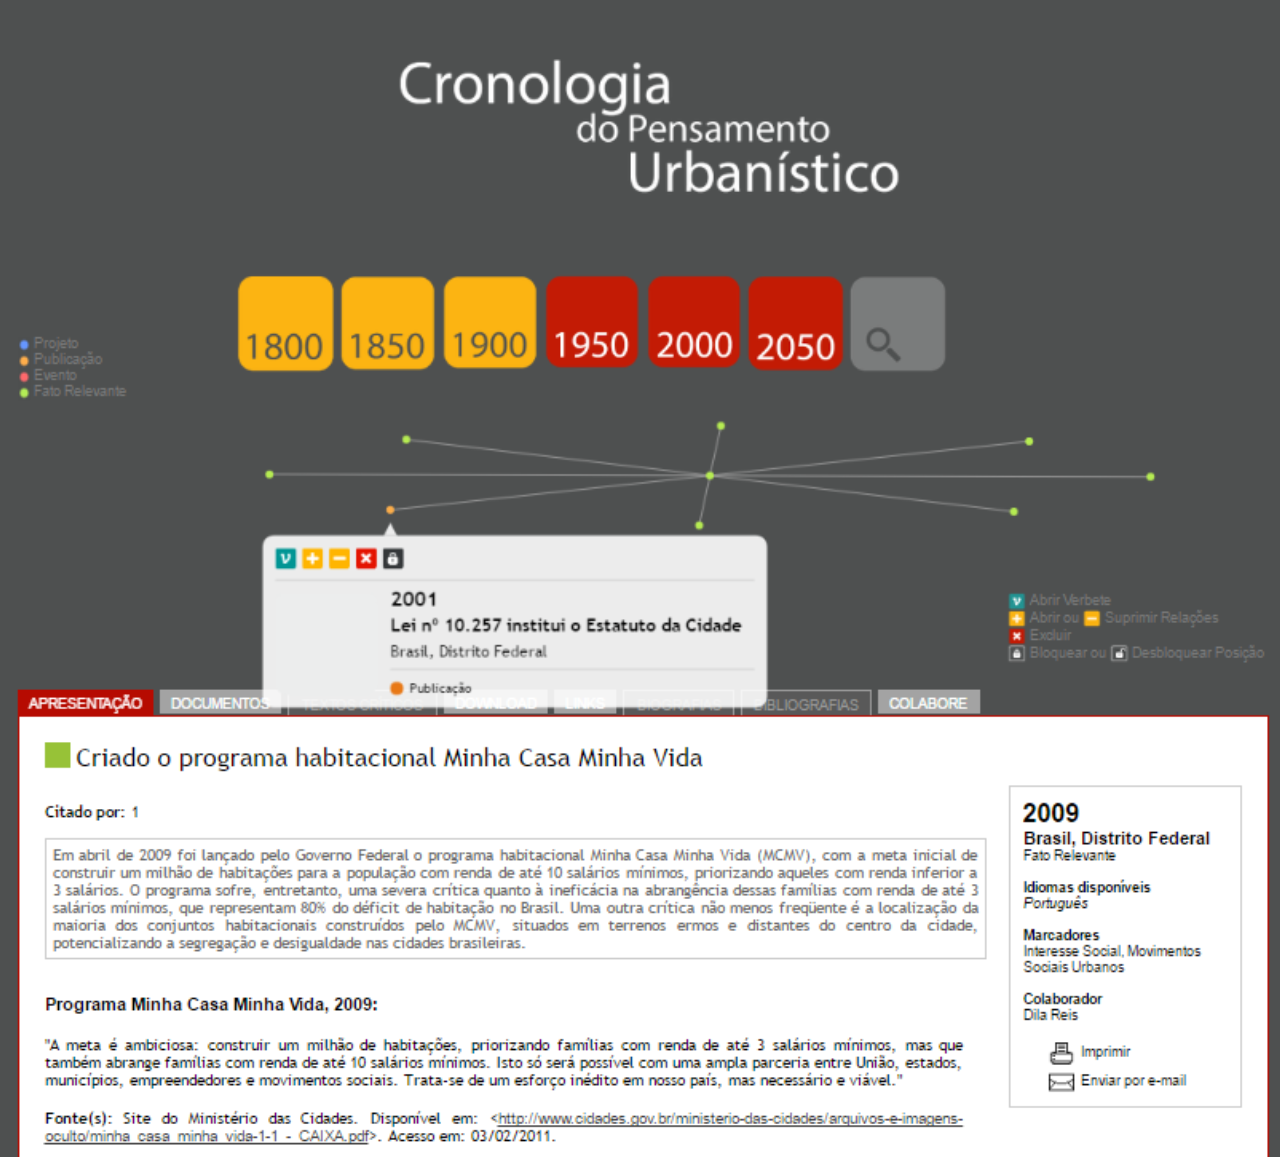 Foto: reprodução/Cronologia do Pensamento Urbanístico